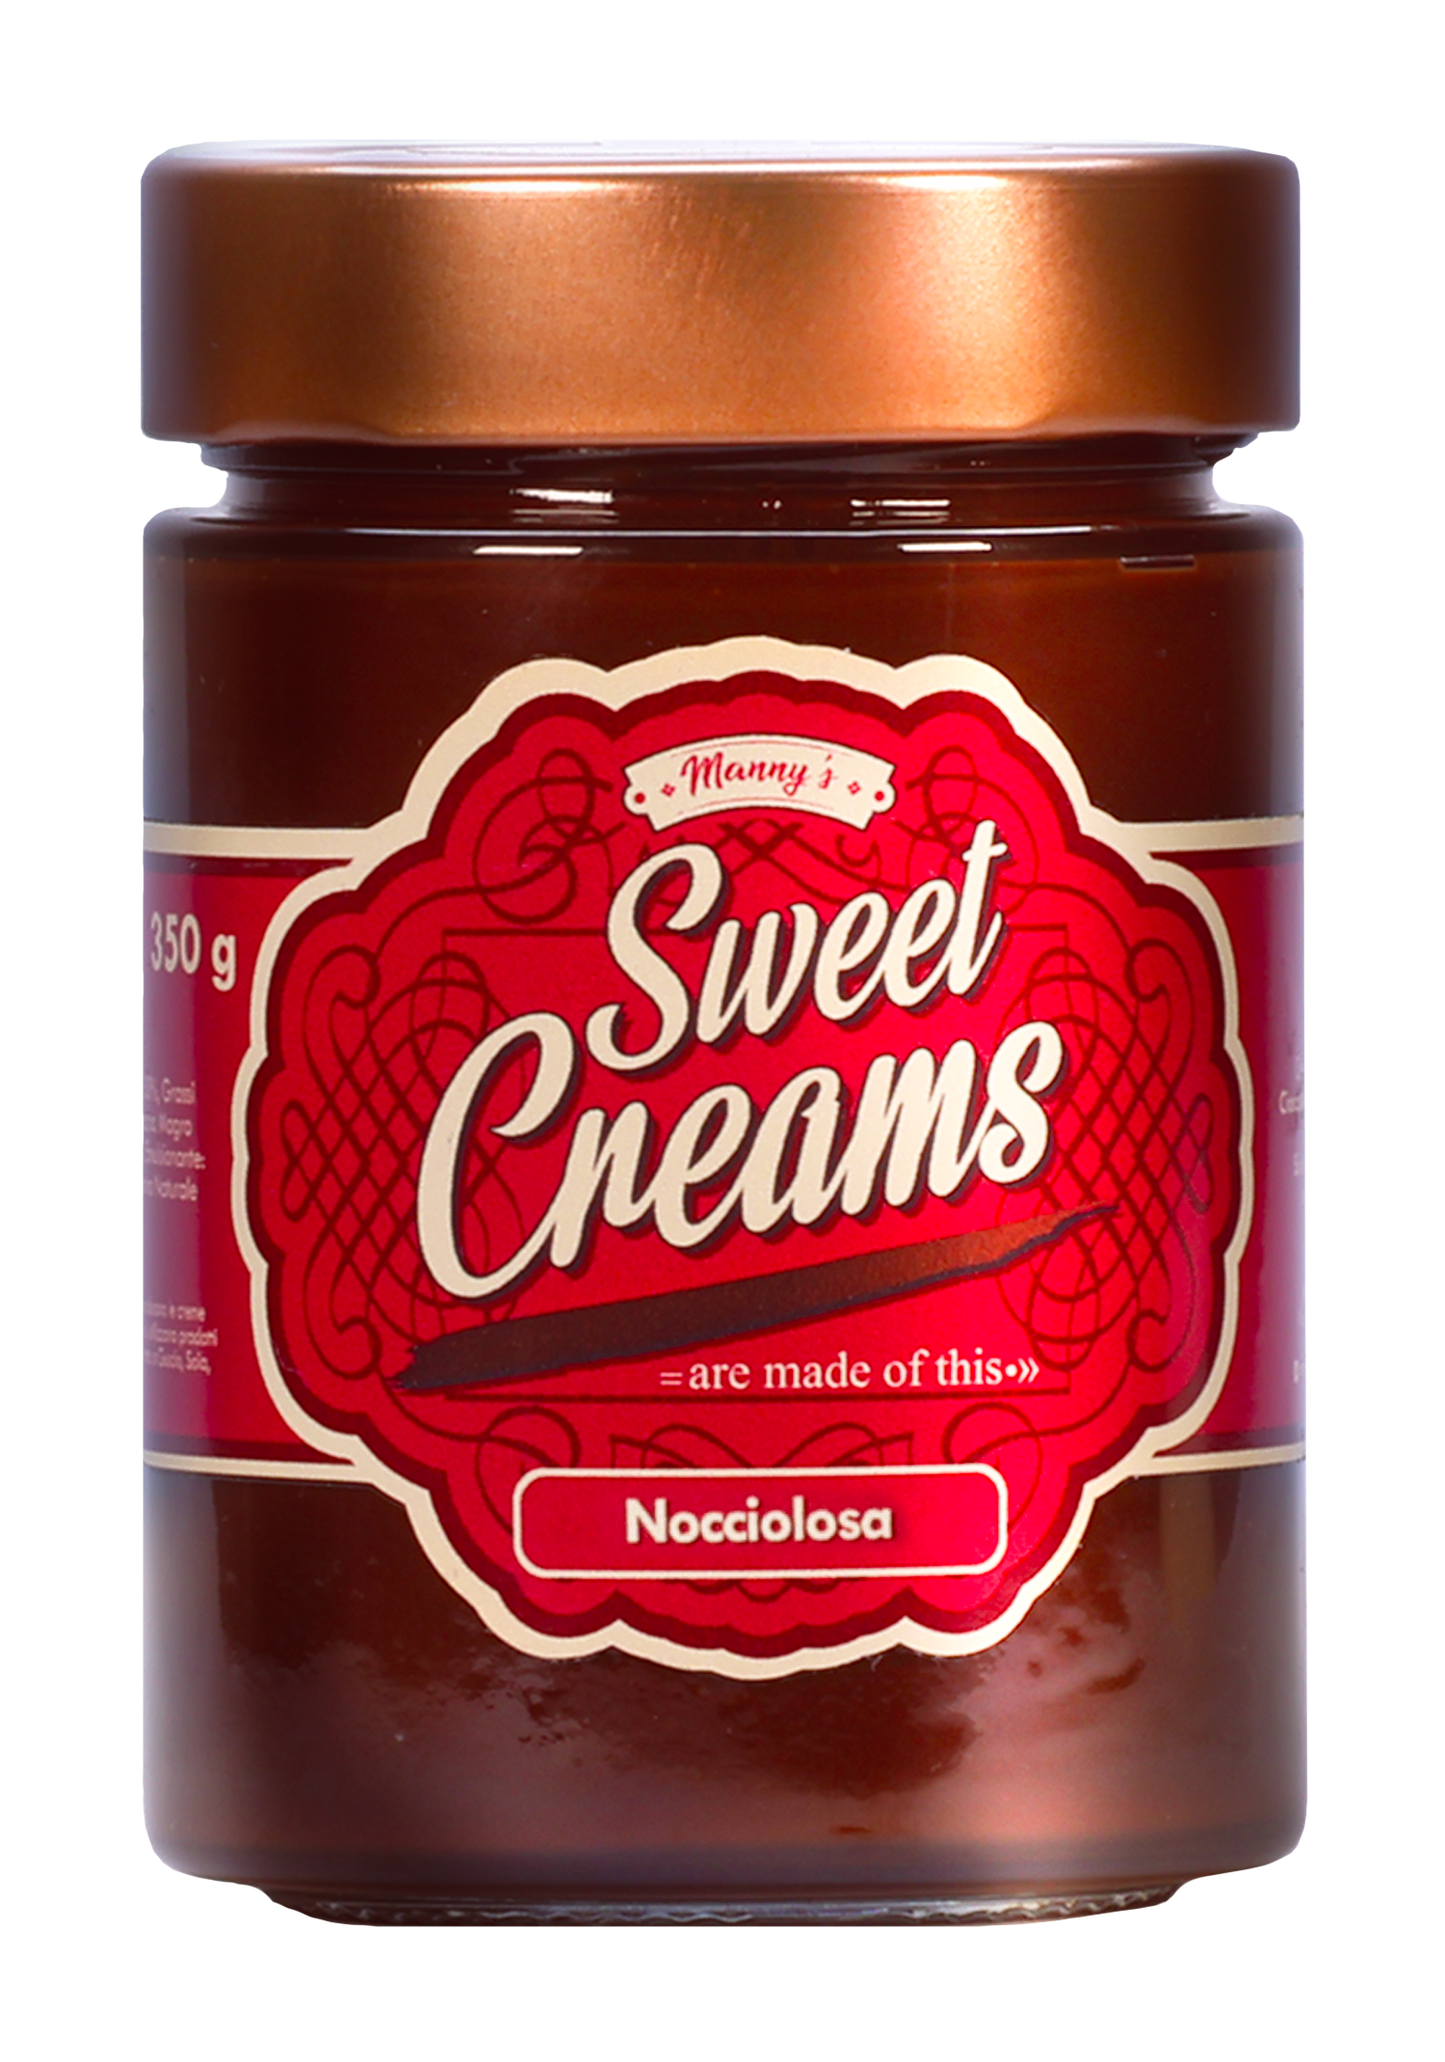 Sweet Creams Nocciolosa